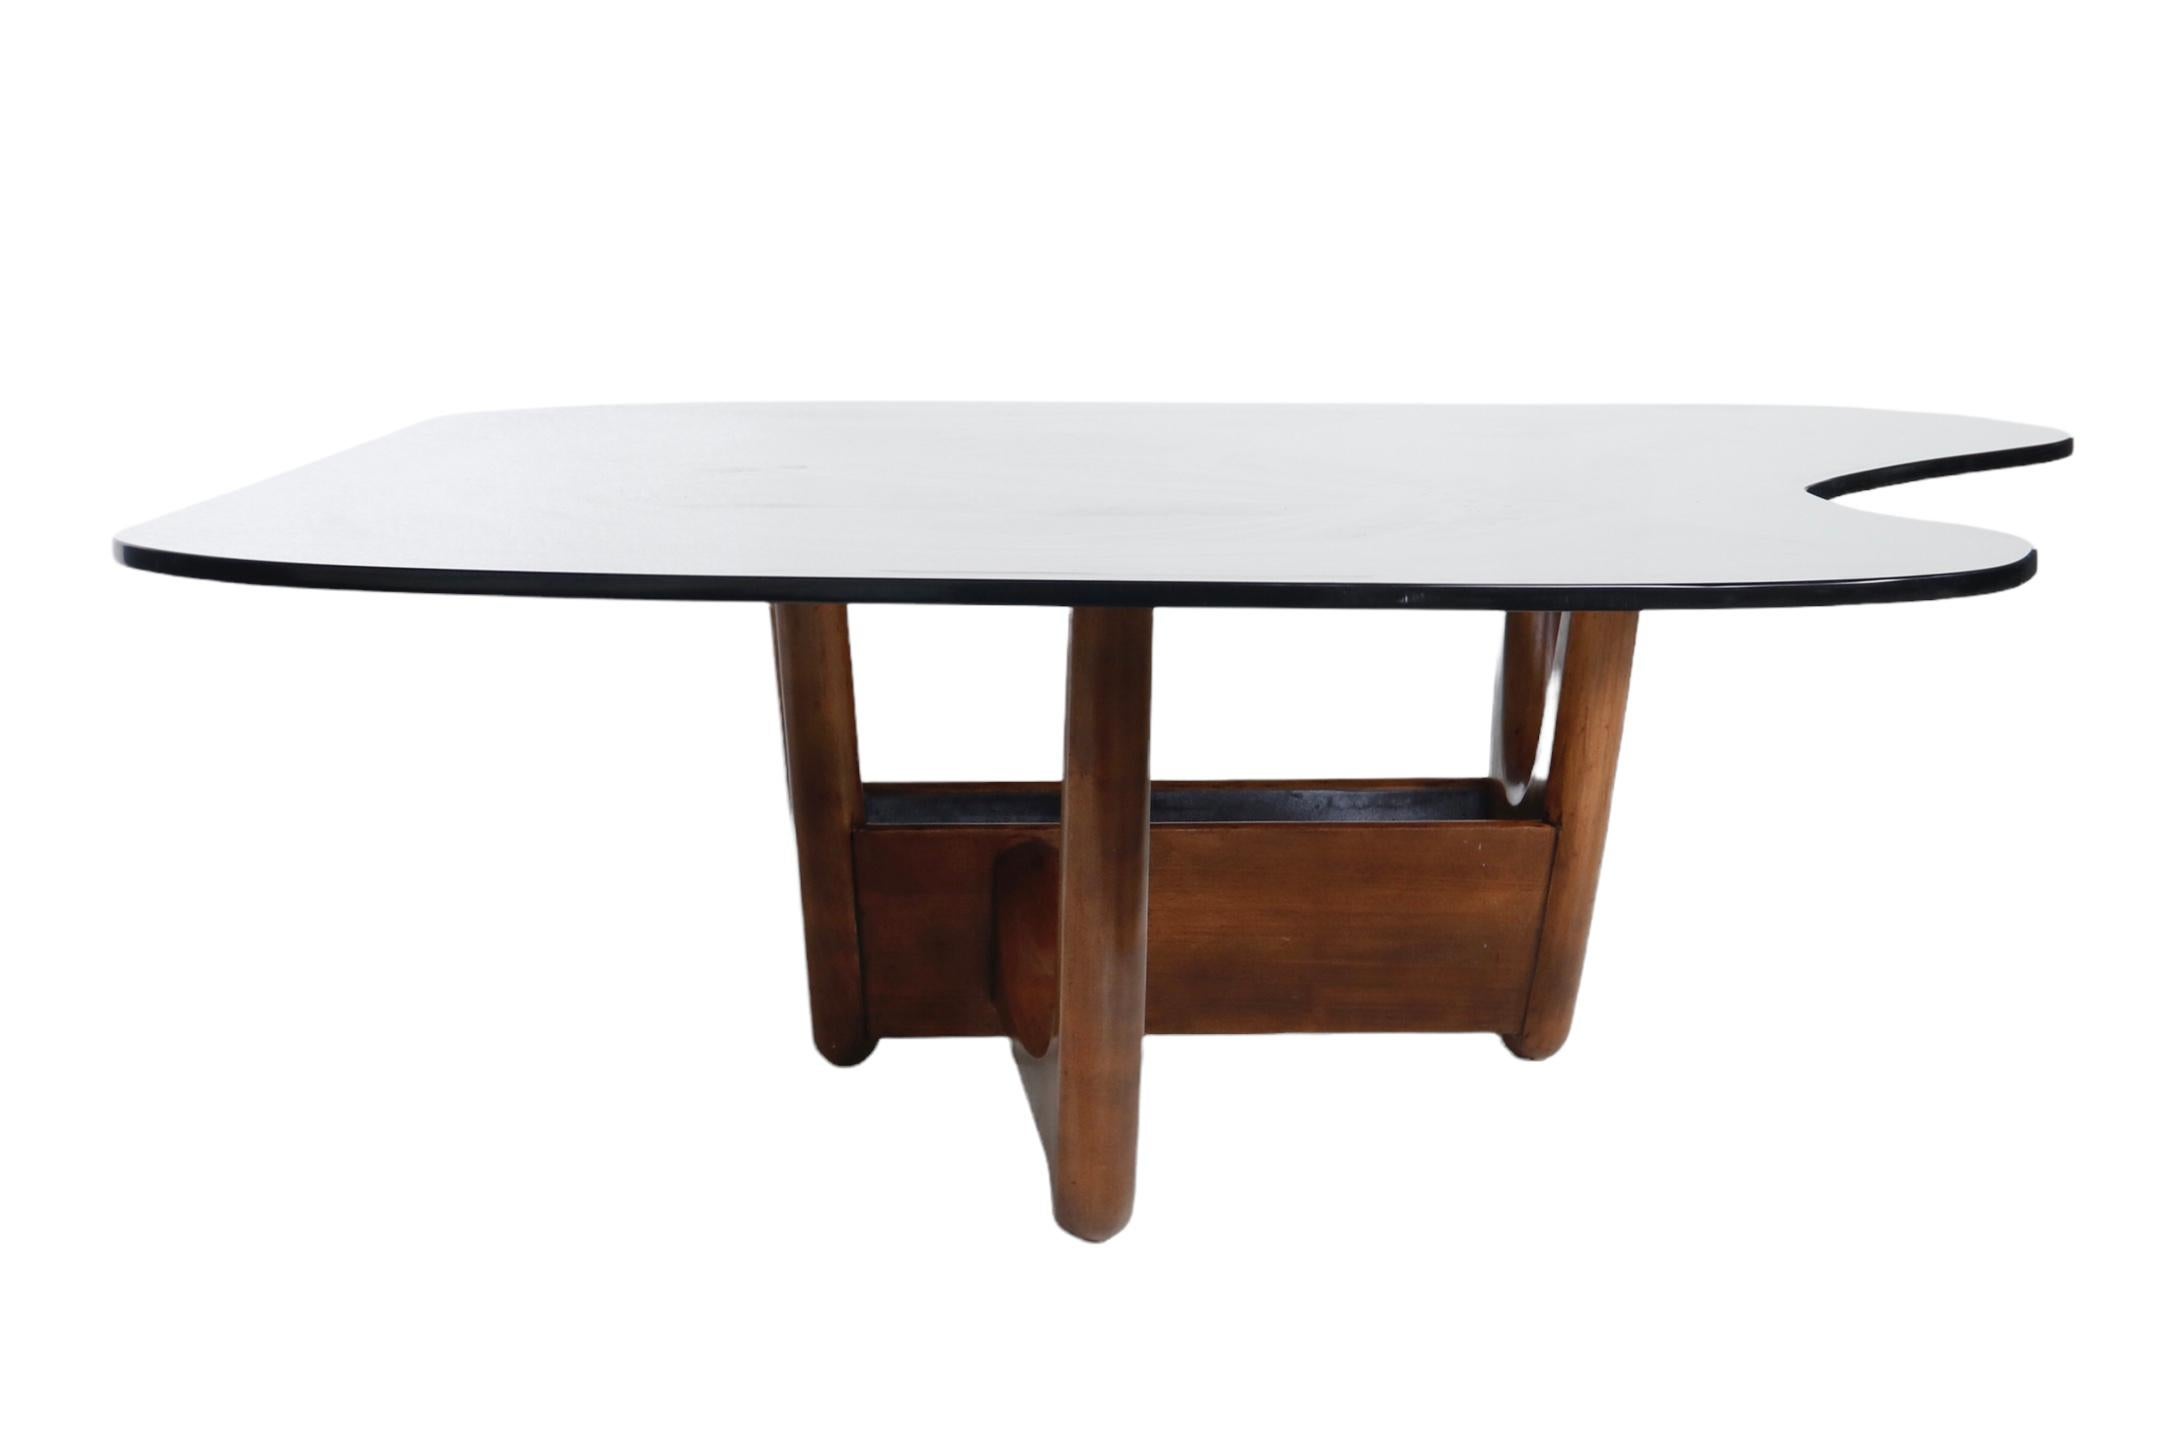 Table basse Adrian Pearsall comportant une base en bois et un plateau en verre fumé personnalisé en forme d'amibe. 

USA, vers 1960.

La base peut être utilisée de deux façons, comme indiqué.

Dimensions :
Overall/Top : 54.5 inches L x 40.5 inches D